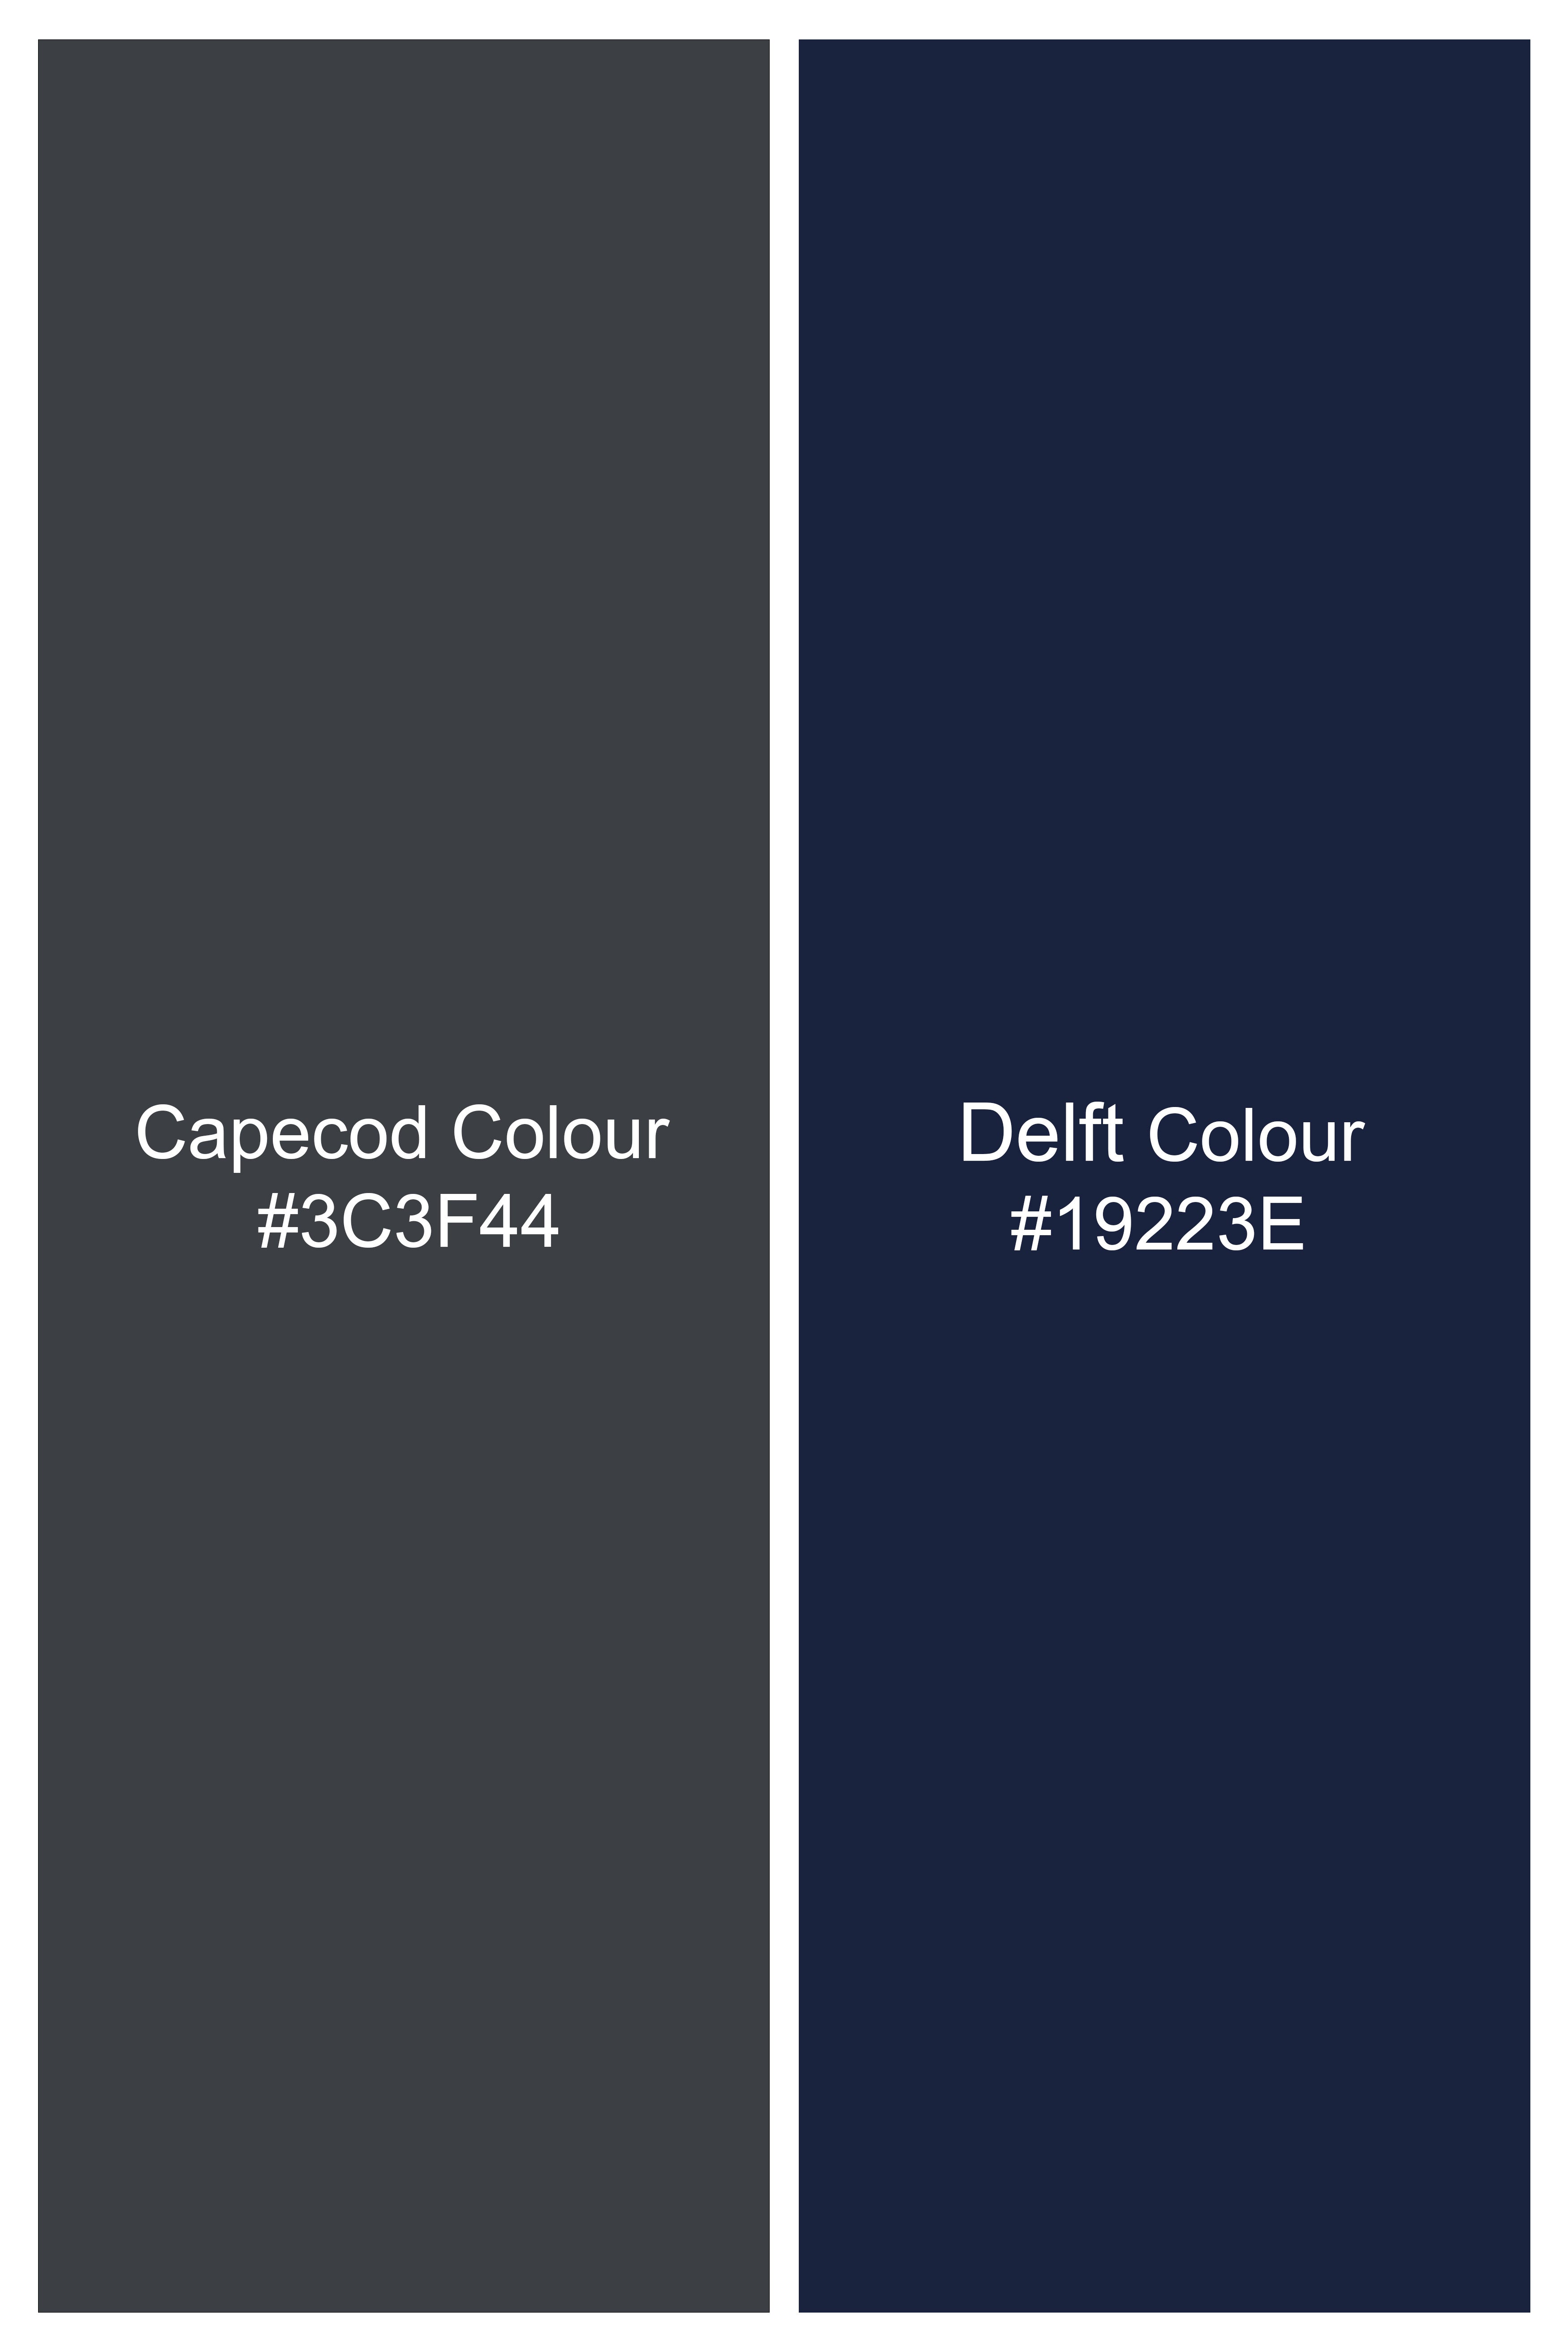 Capecod Gray and Delft Blue Subtle Checkered Wool Rich Suit ST2905-SB-36, ST2905-SB-38, ST2905-SB-40, ST2905-SB-42, ST2905-SB-44, ST2905-SB-46, ST2905-SB-48, ST2905-SB-50, ST2905-SB-52, ST2905-SB-54, ST2905-SB-56, ST2905-SB-58, ST2905-SB-60